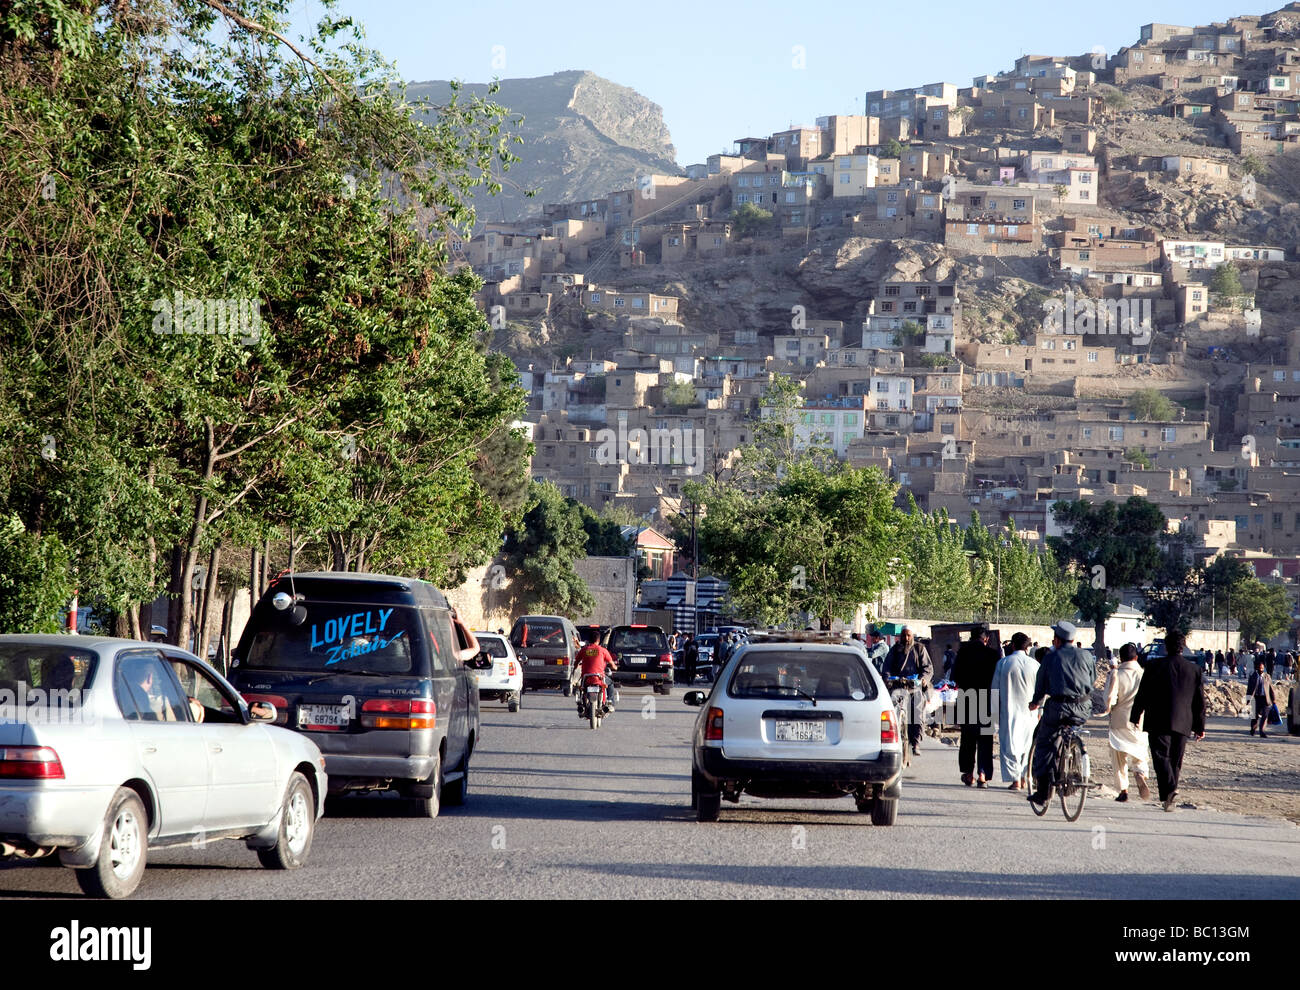 A la sortie de la circulation centre de Kaboul vers une colline à forte densité de population ; la population de la ville a considérablement élargi au cours des dernières années Banque D'Images